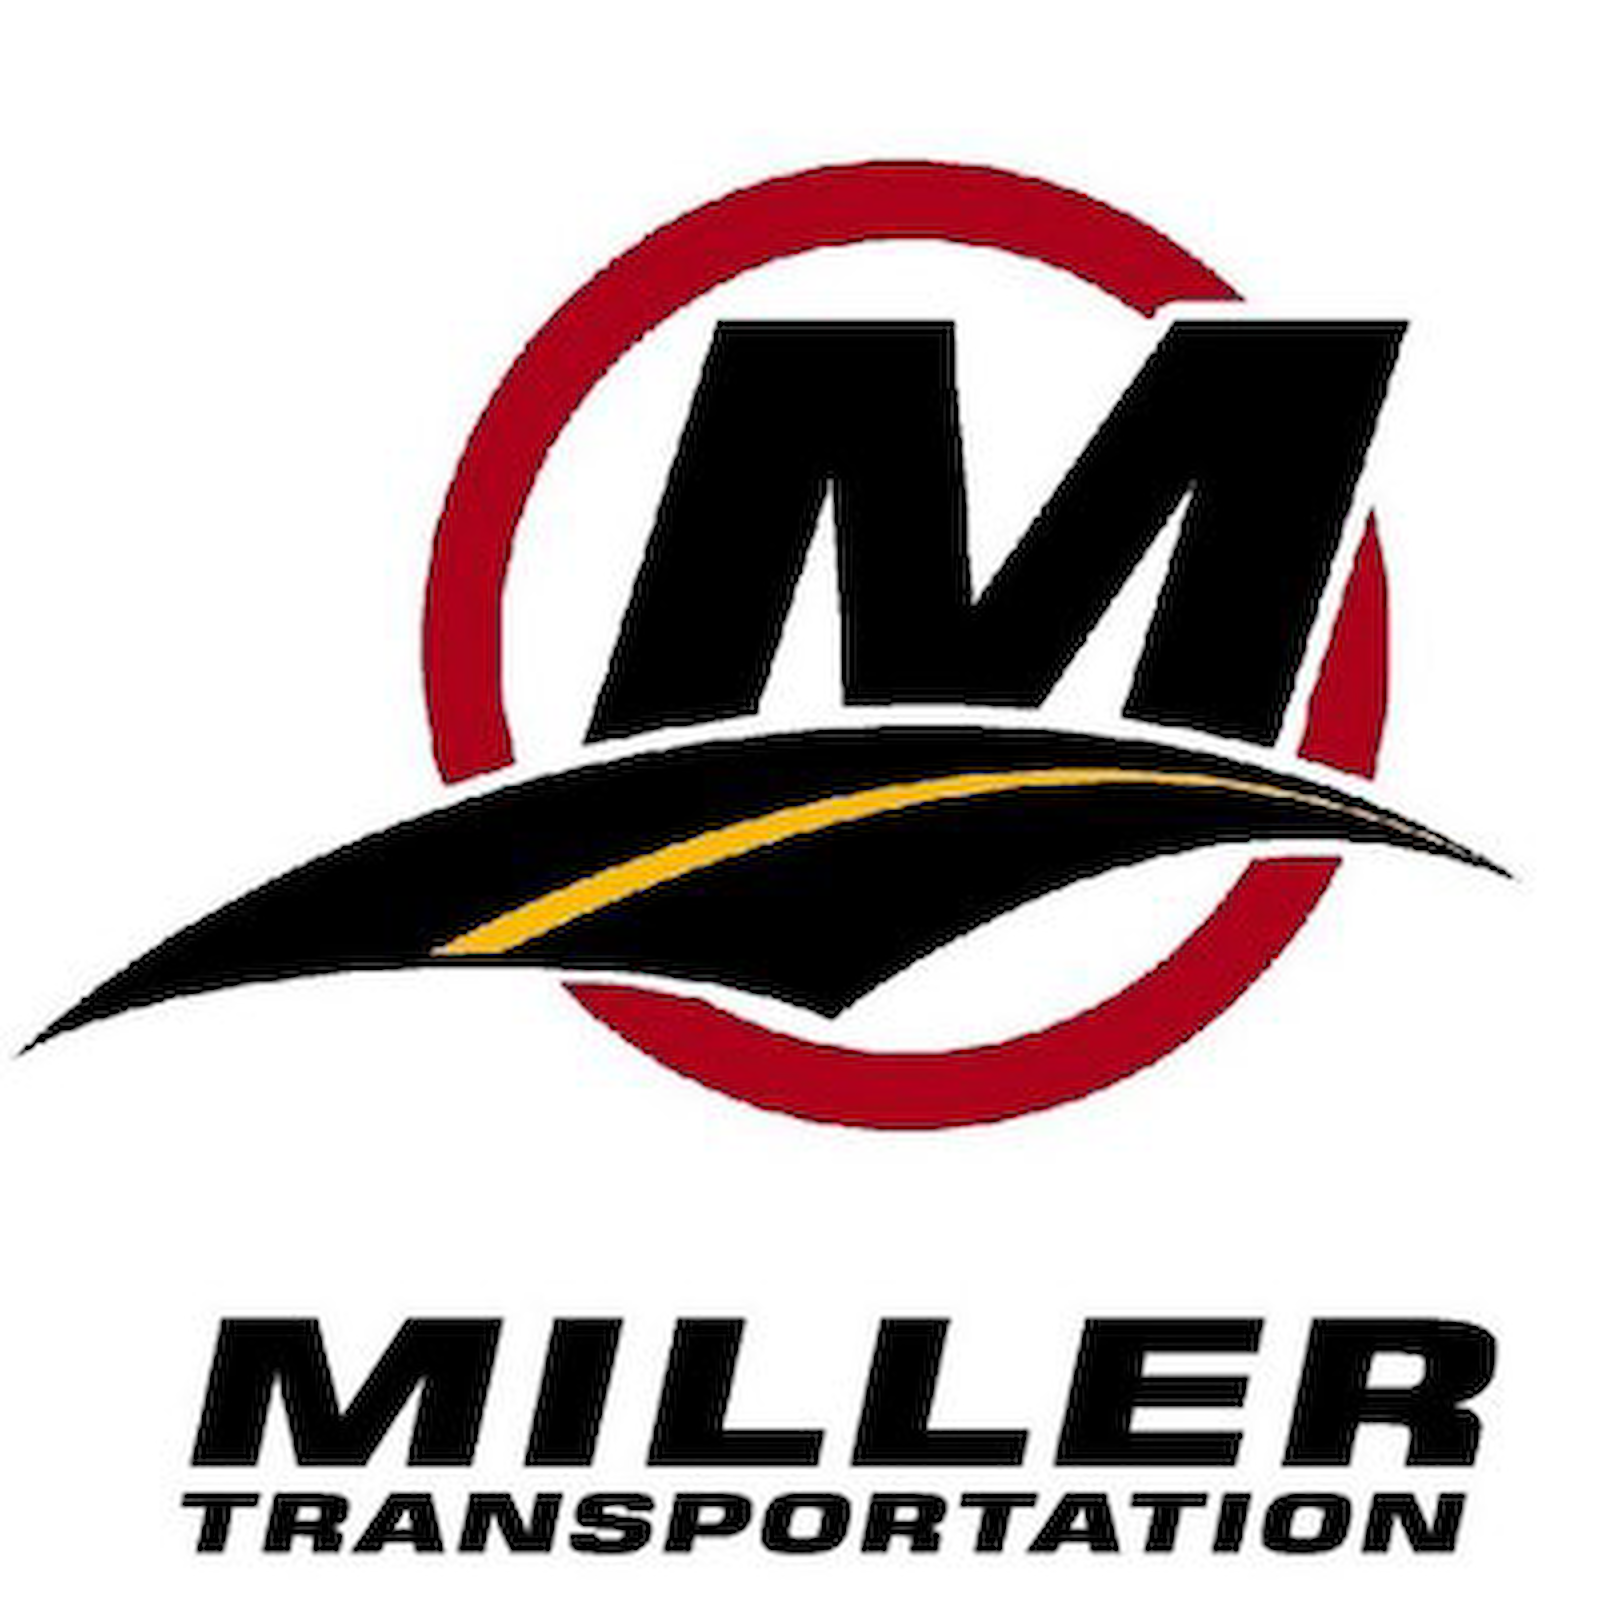 Miller Transportation